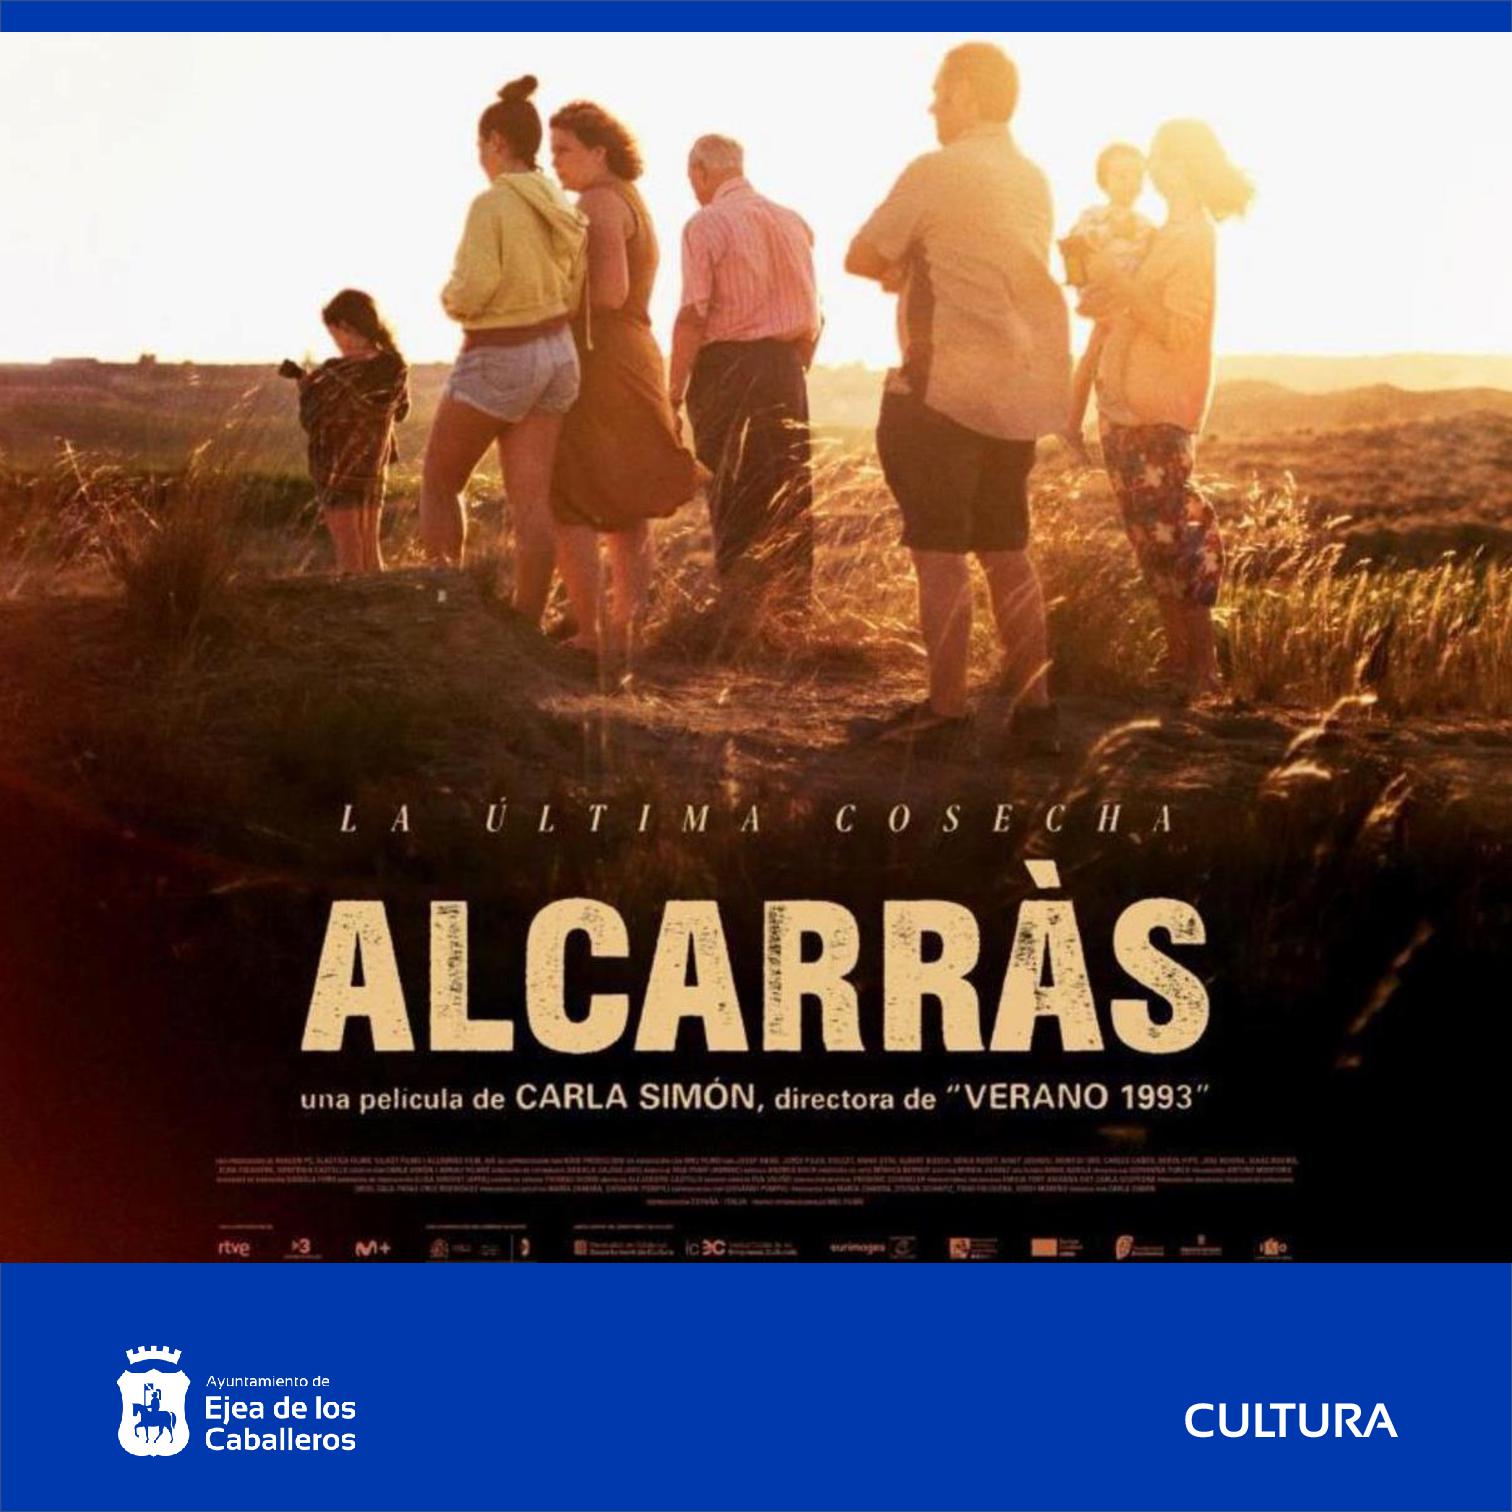 En este momento estás viendo Ciclo de cine Keaton: La directora catalana Carla Simón ofrece una visión humanista de la tierra, de la agricultura y de la familia de su película “Alcarrás”